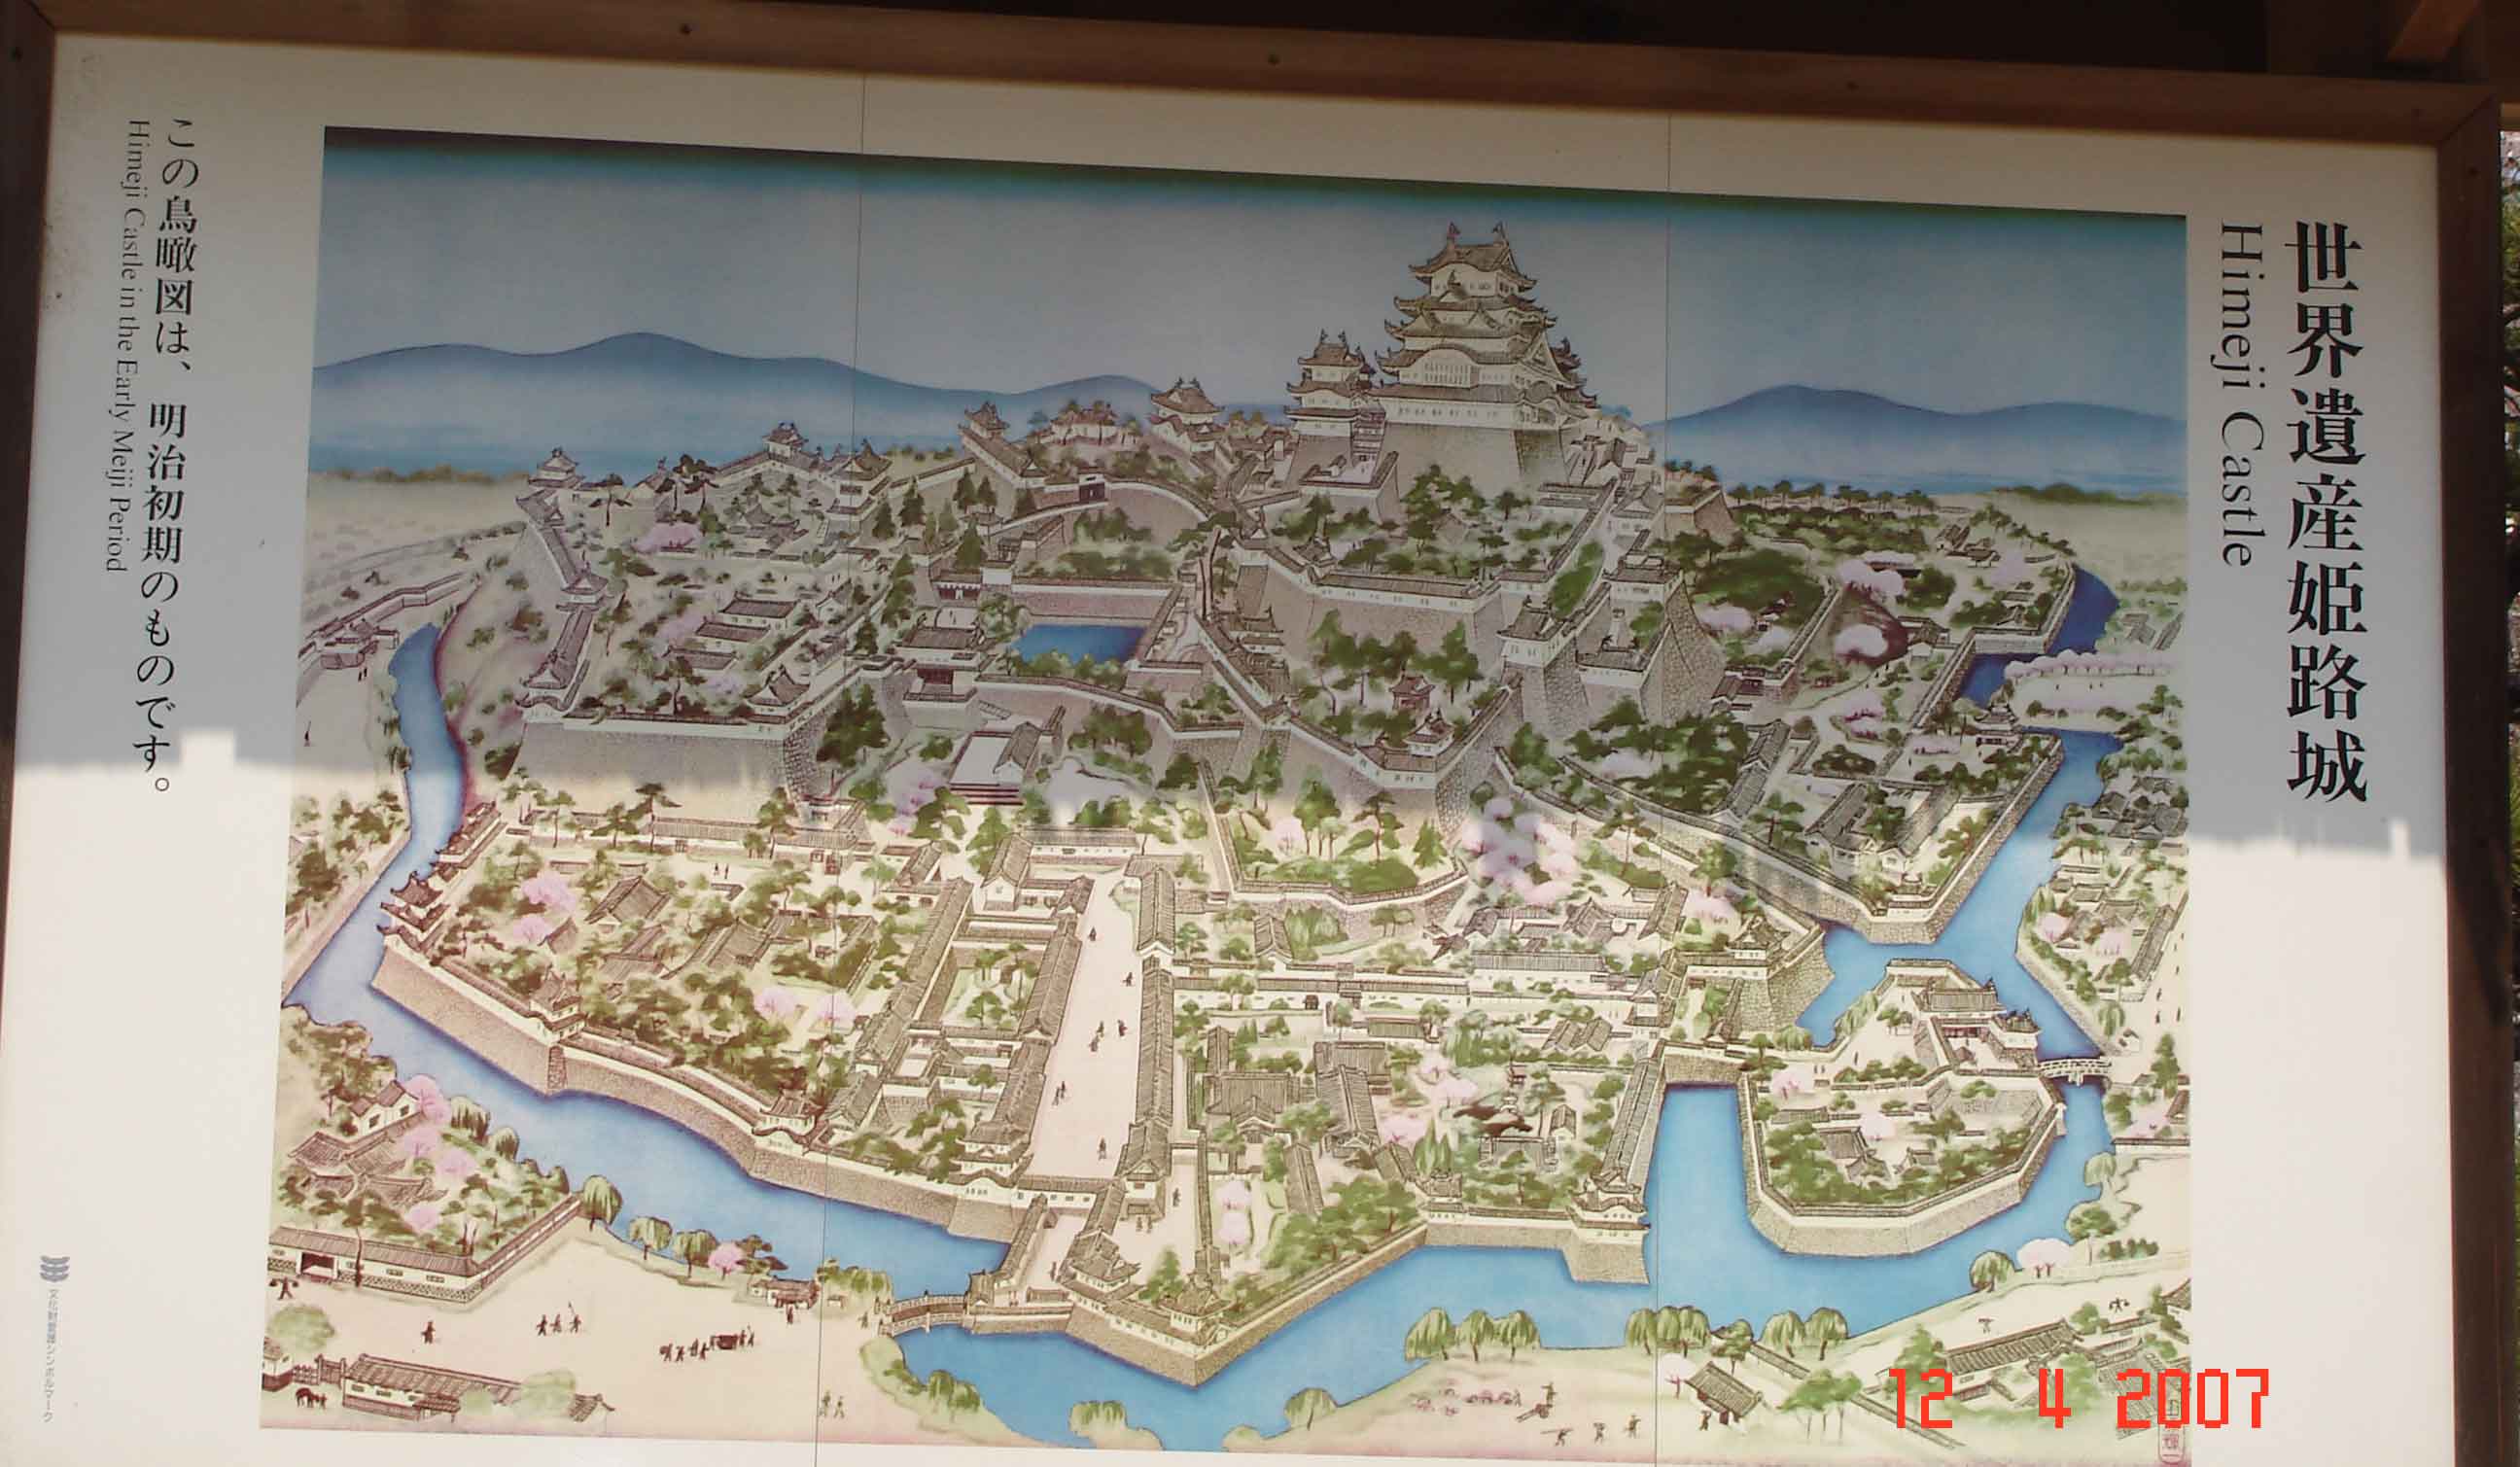 Himeji CastlePlan Himeji Castle Plan - Himeji City